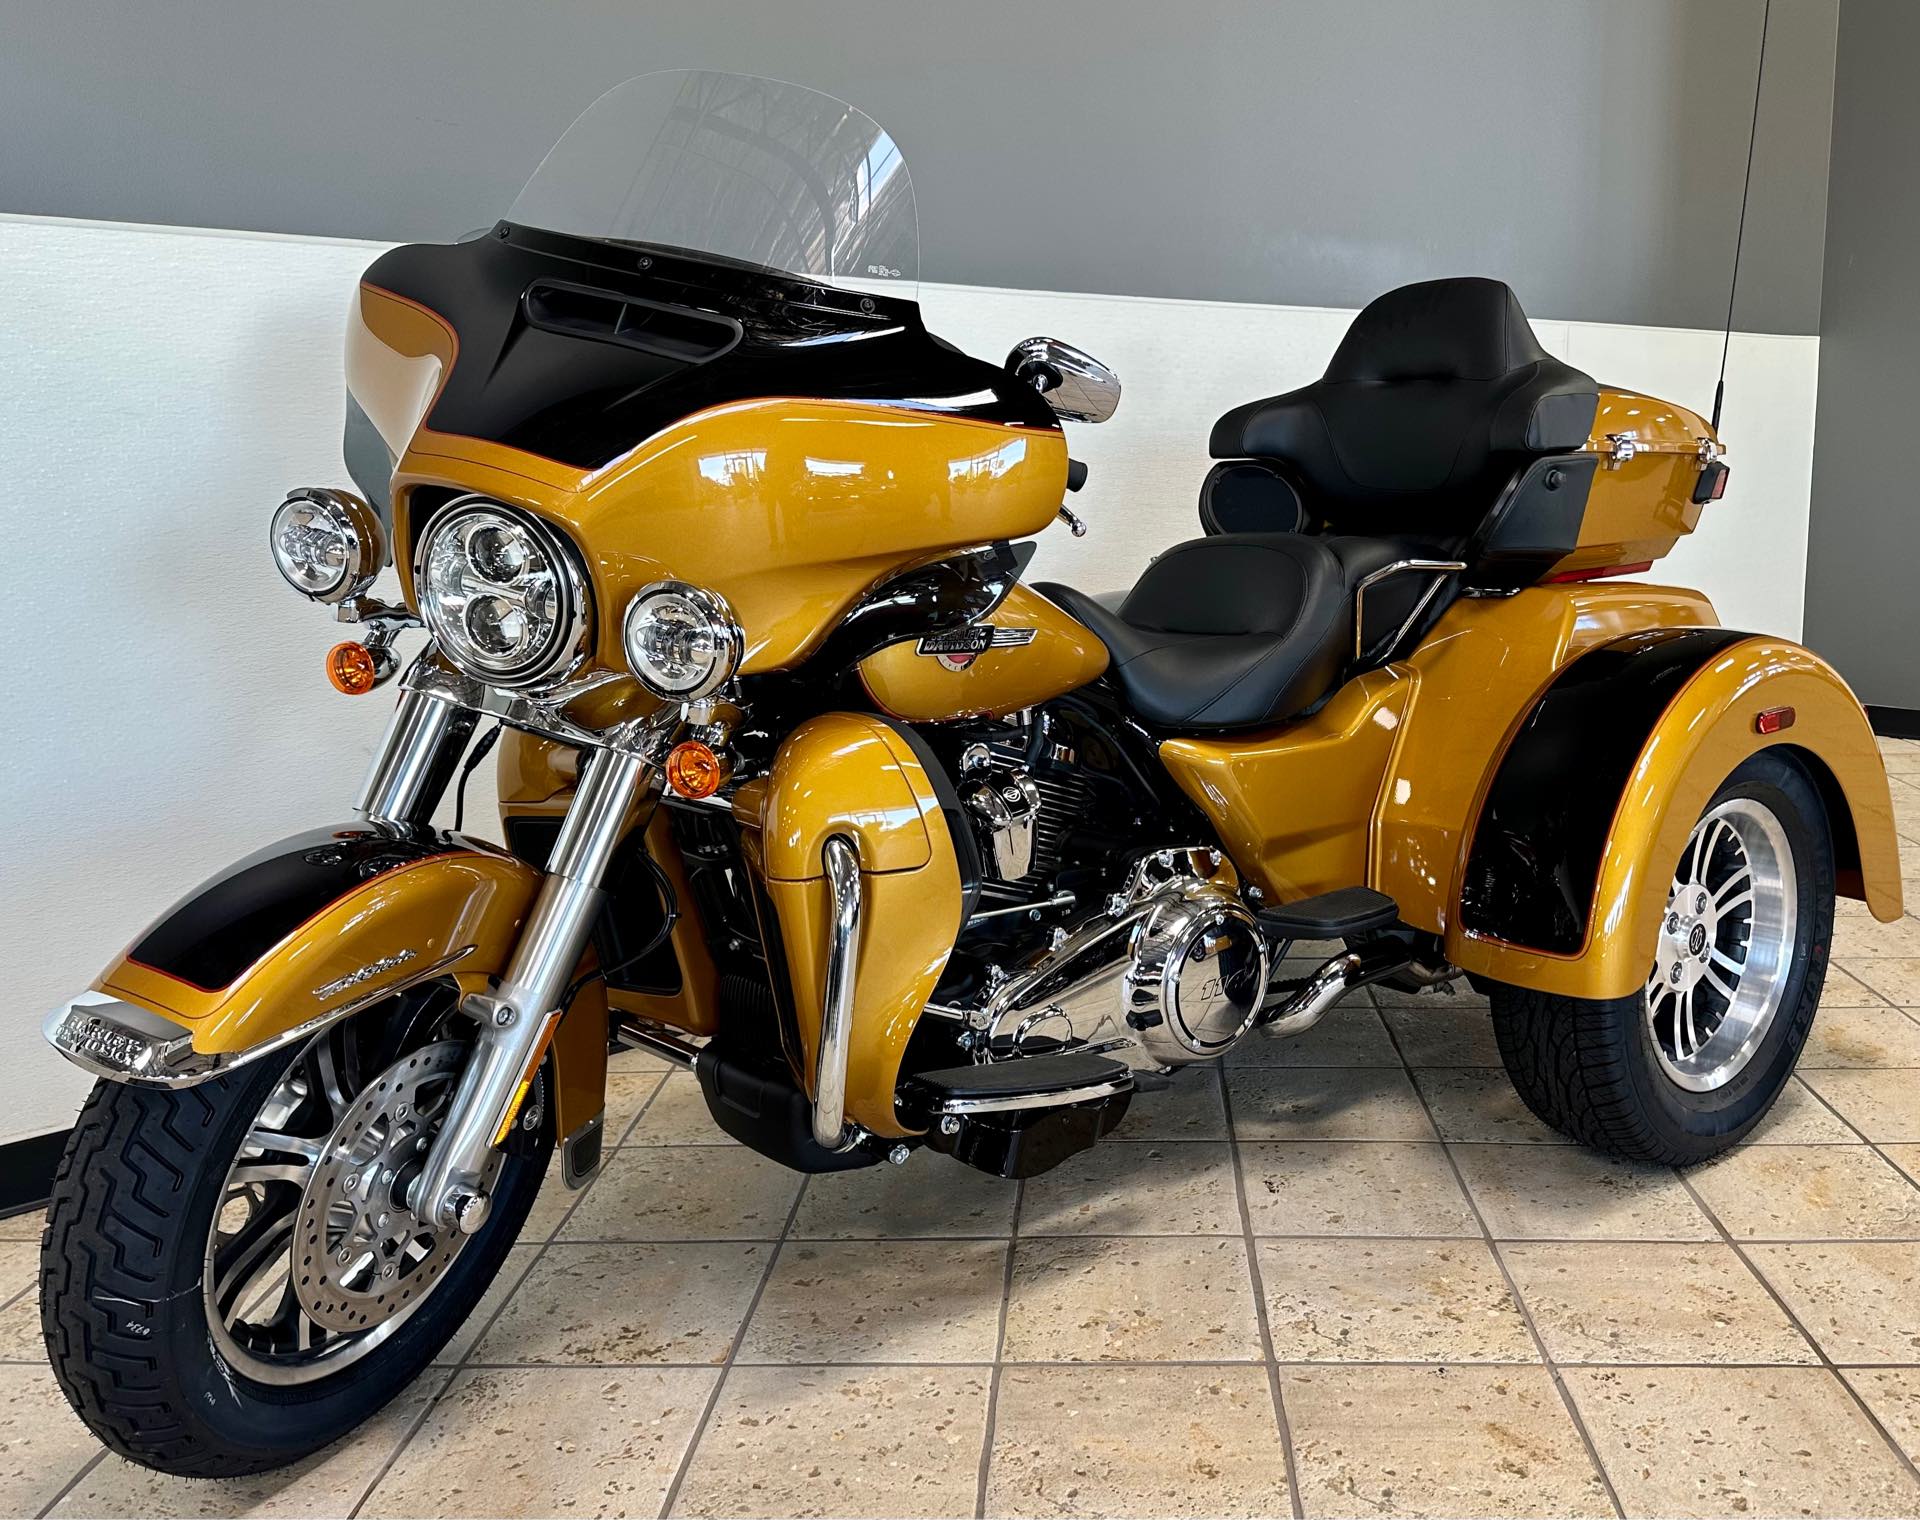 2023 Harley-Davidson Trike Tri Glide Ultra at Destination Harley-Davidson®, Tacoma, WA 98424